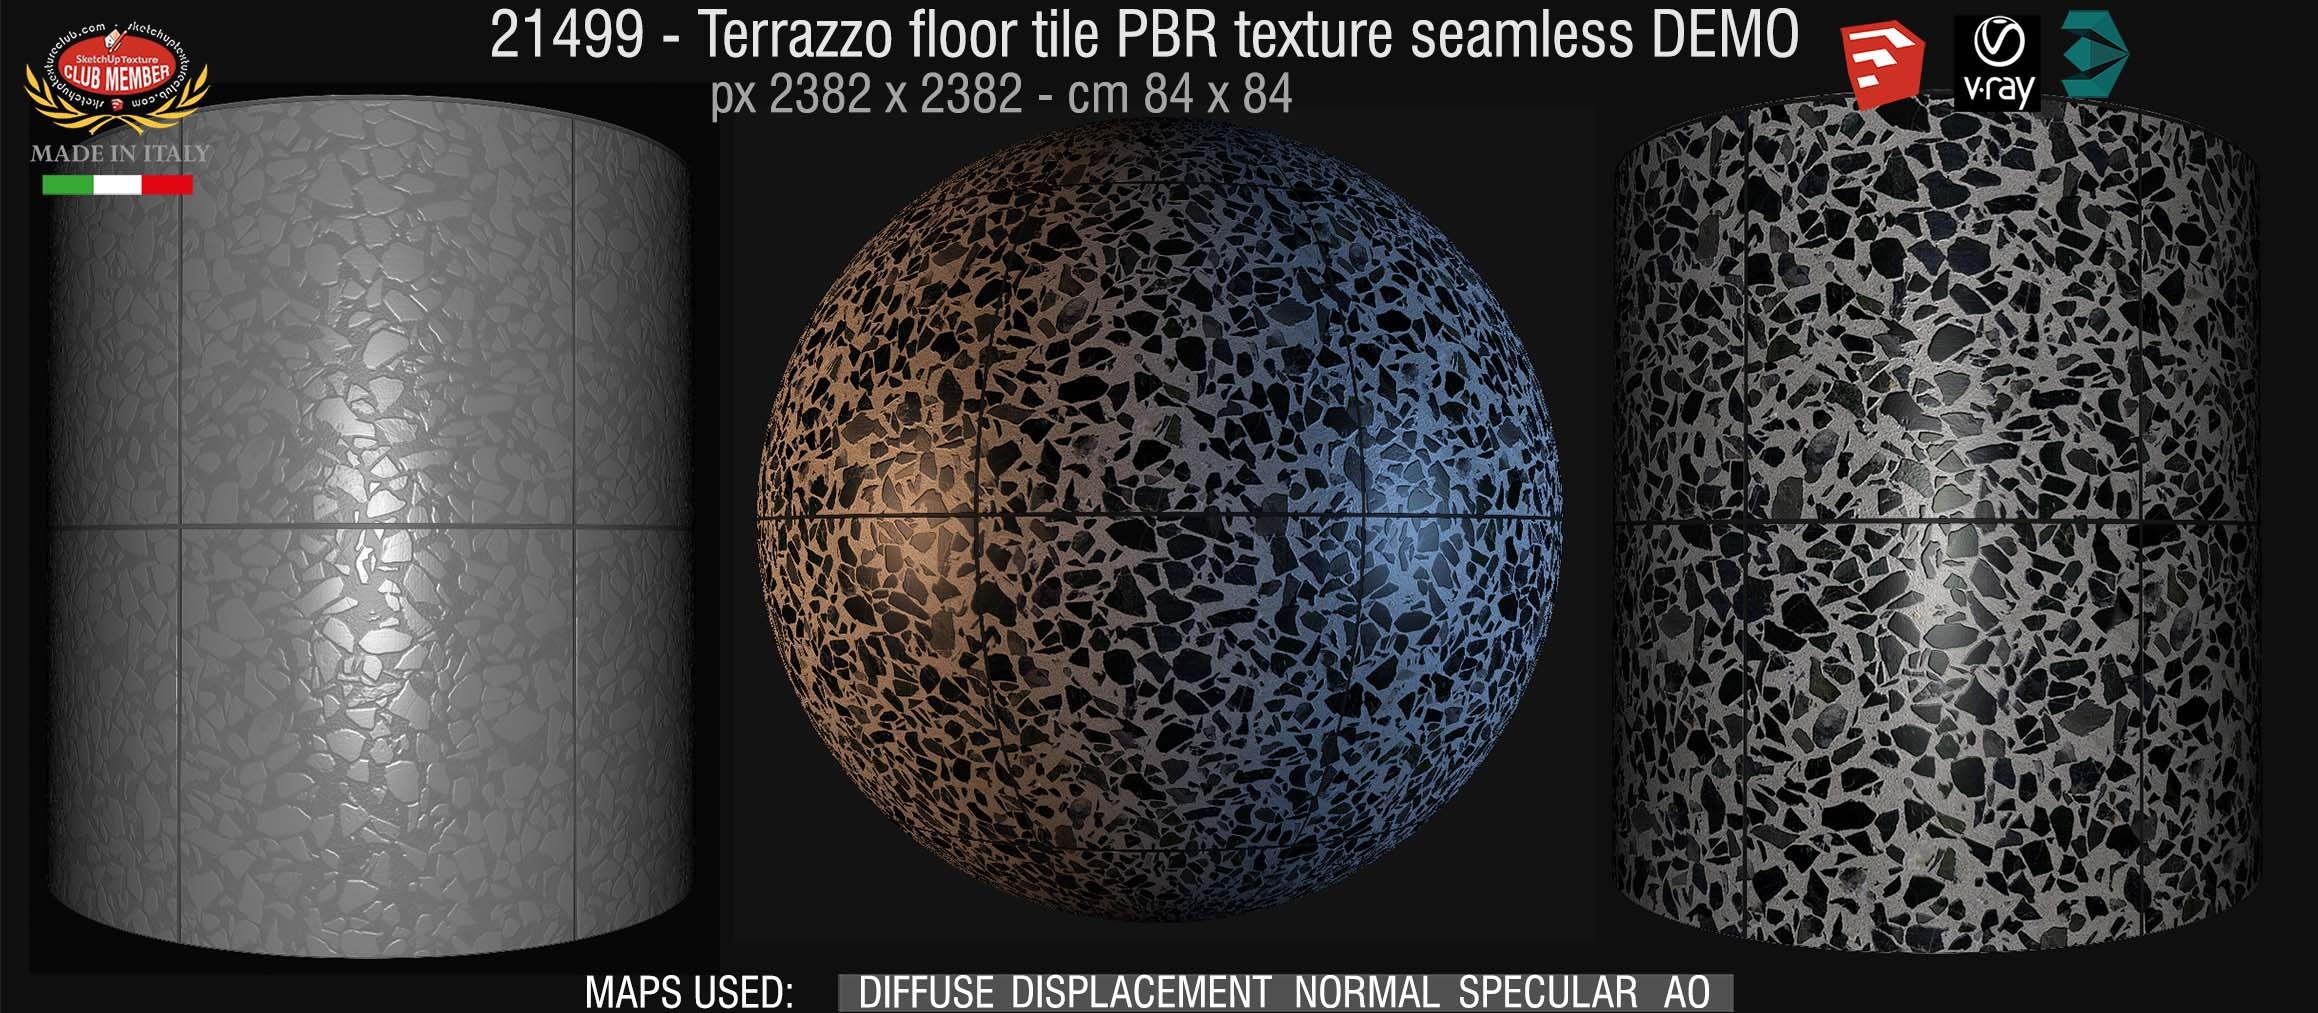 21499 terrazzo floor tile PBR texture seamless DEMO